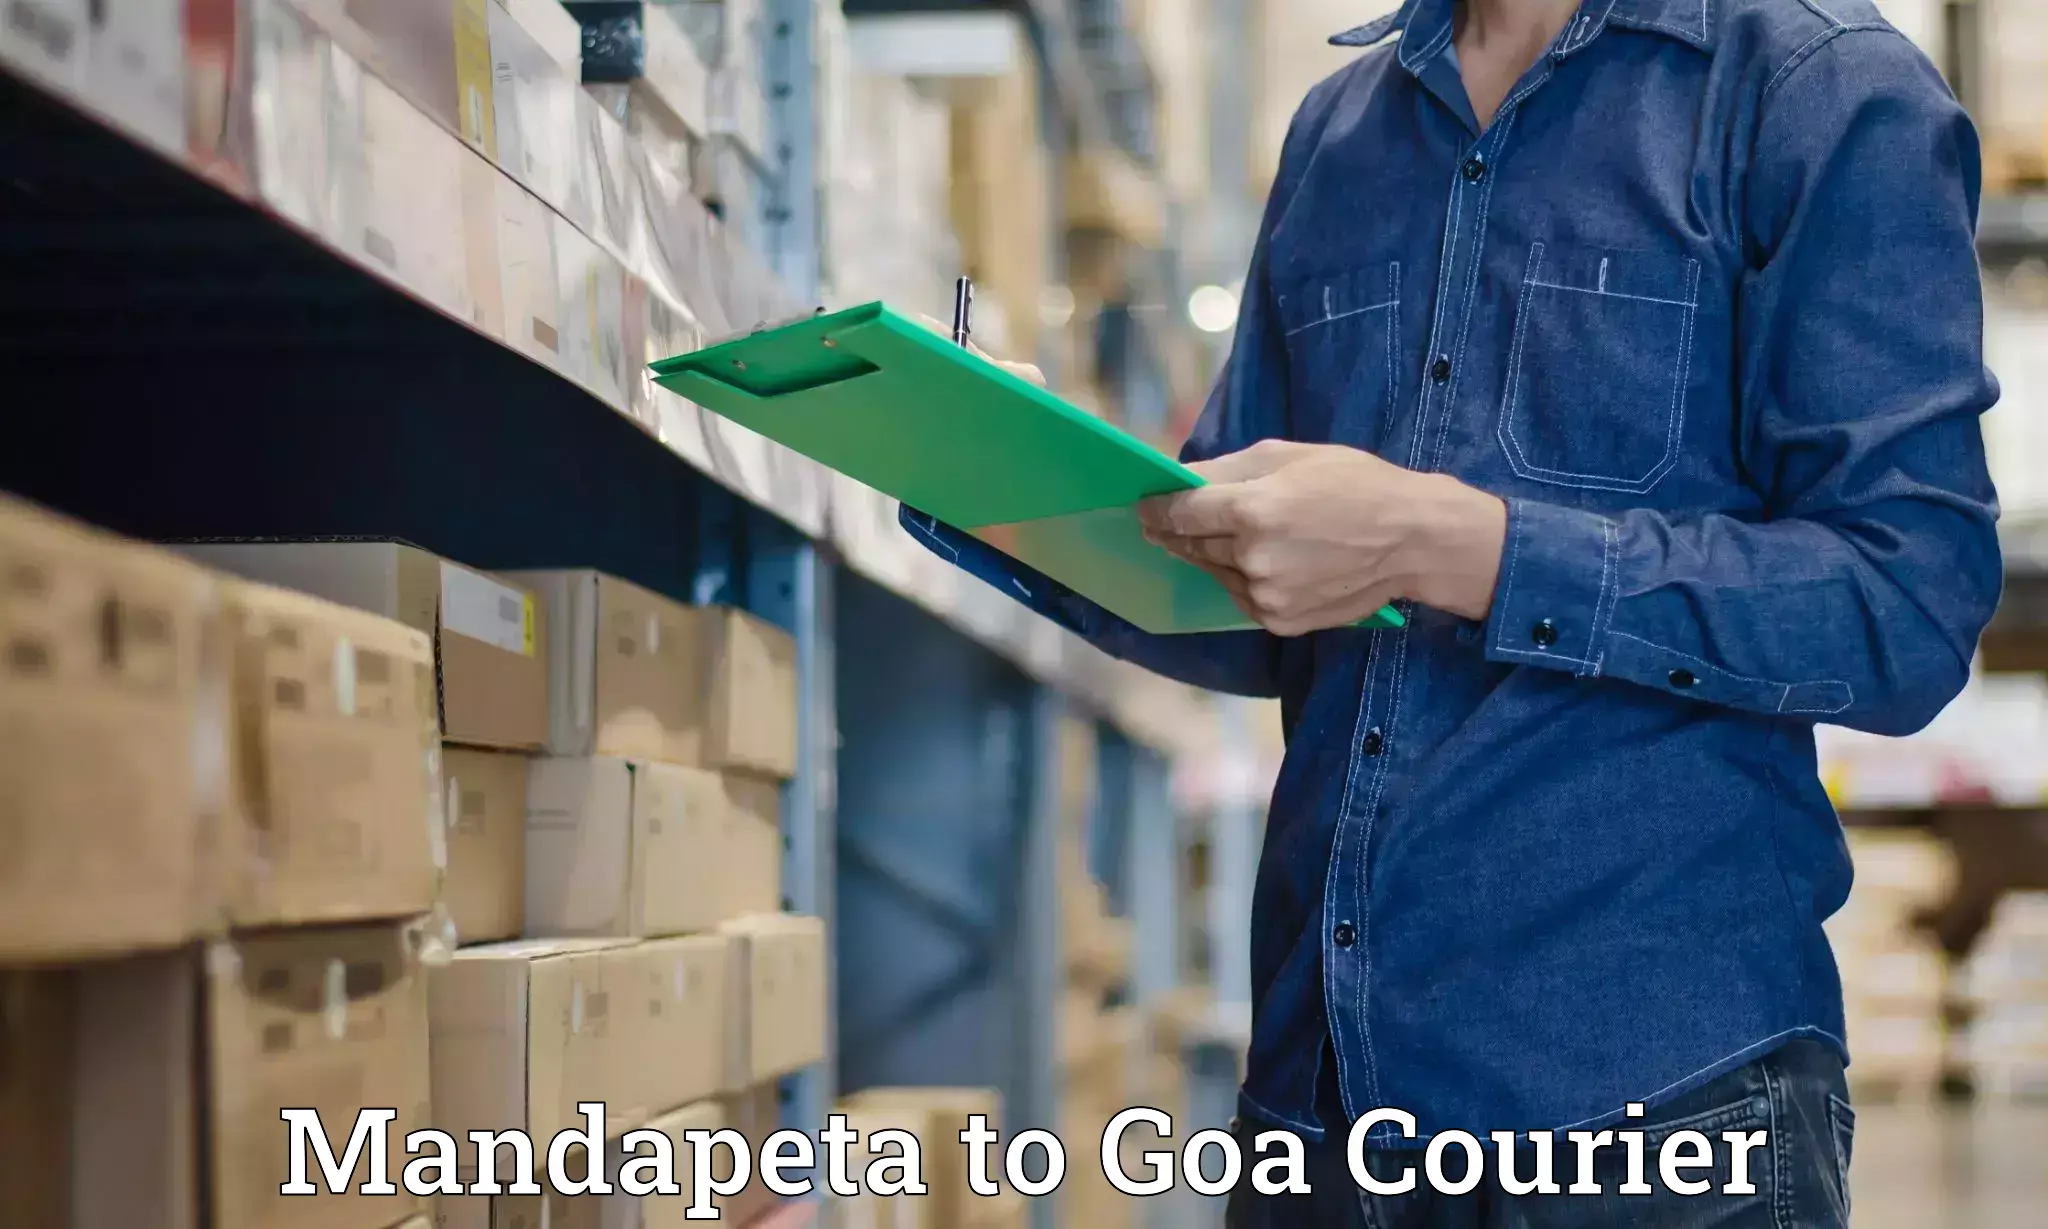 Reliable courier services Mandapeta to Vasco da Gama